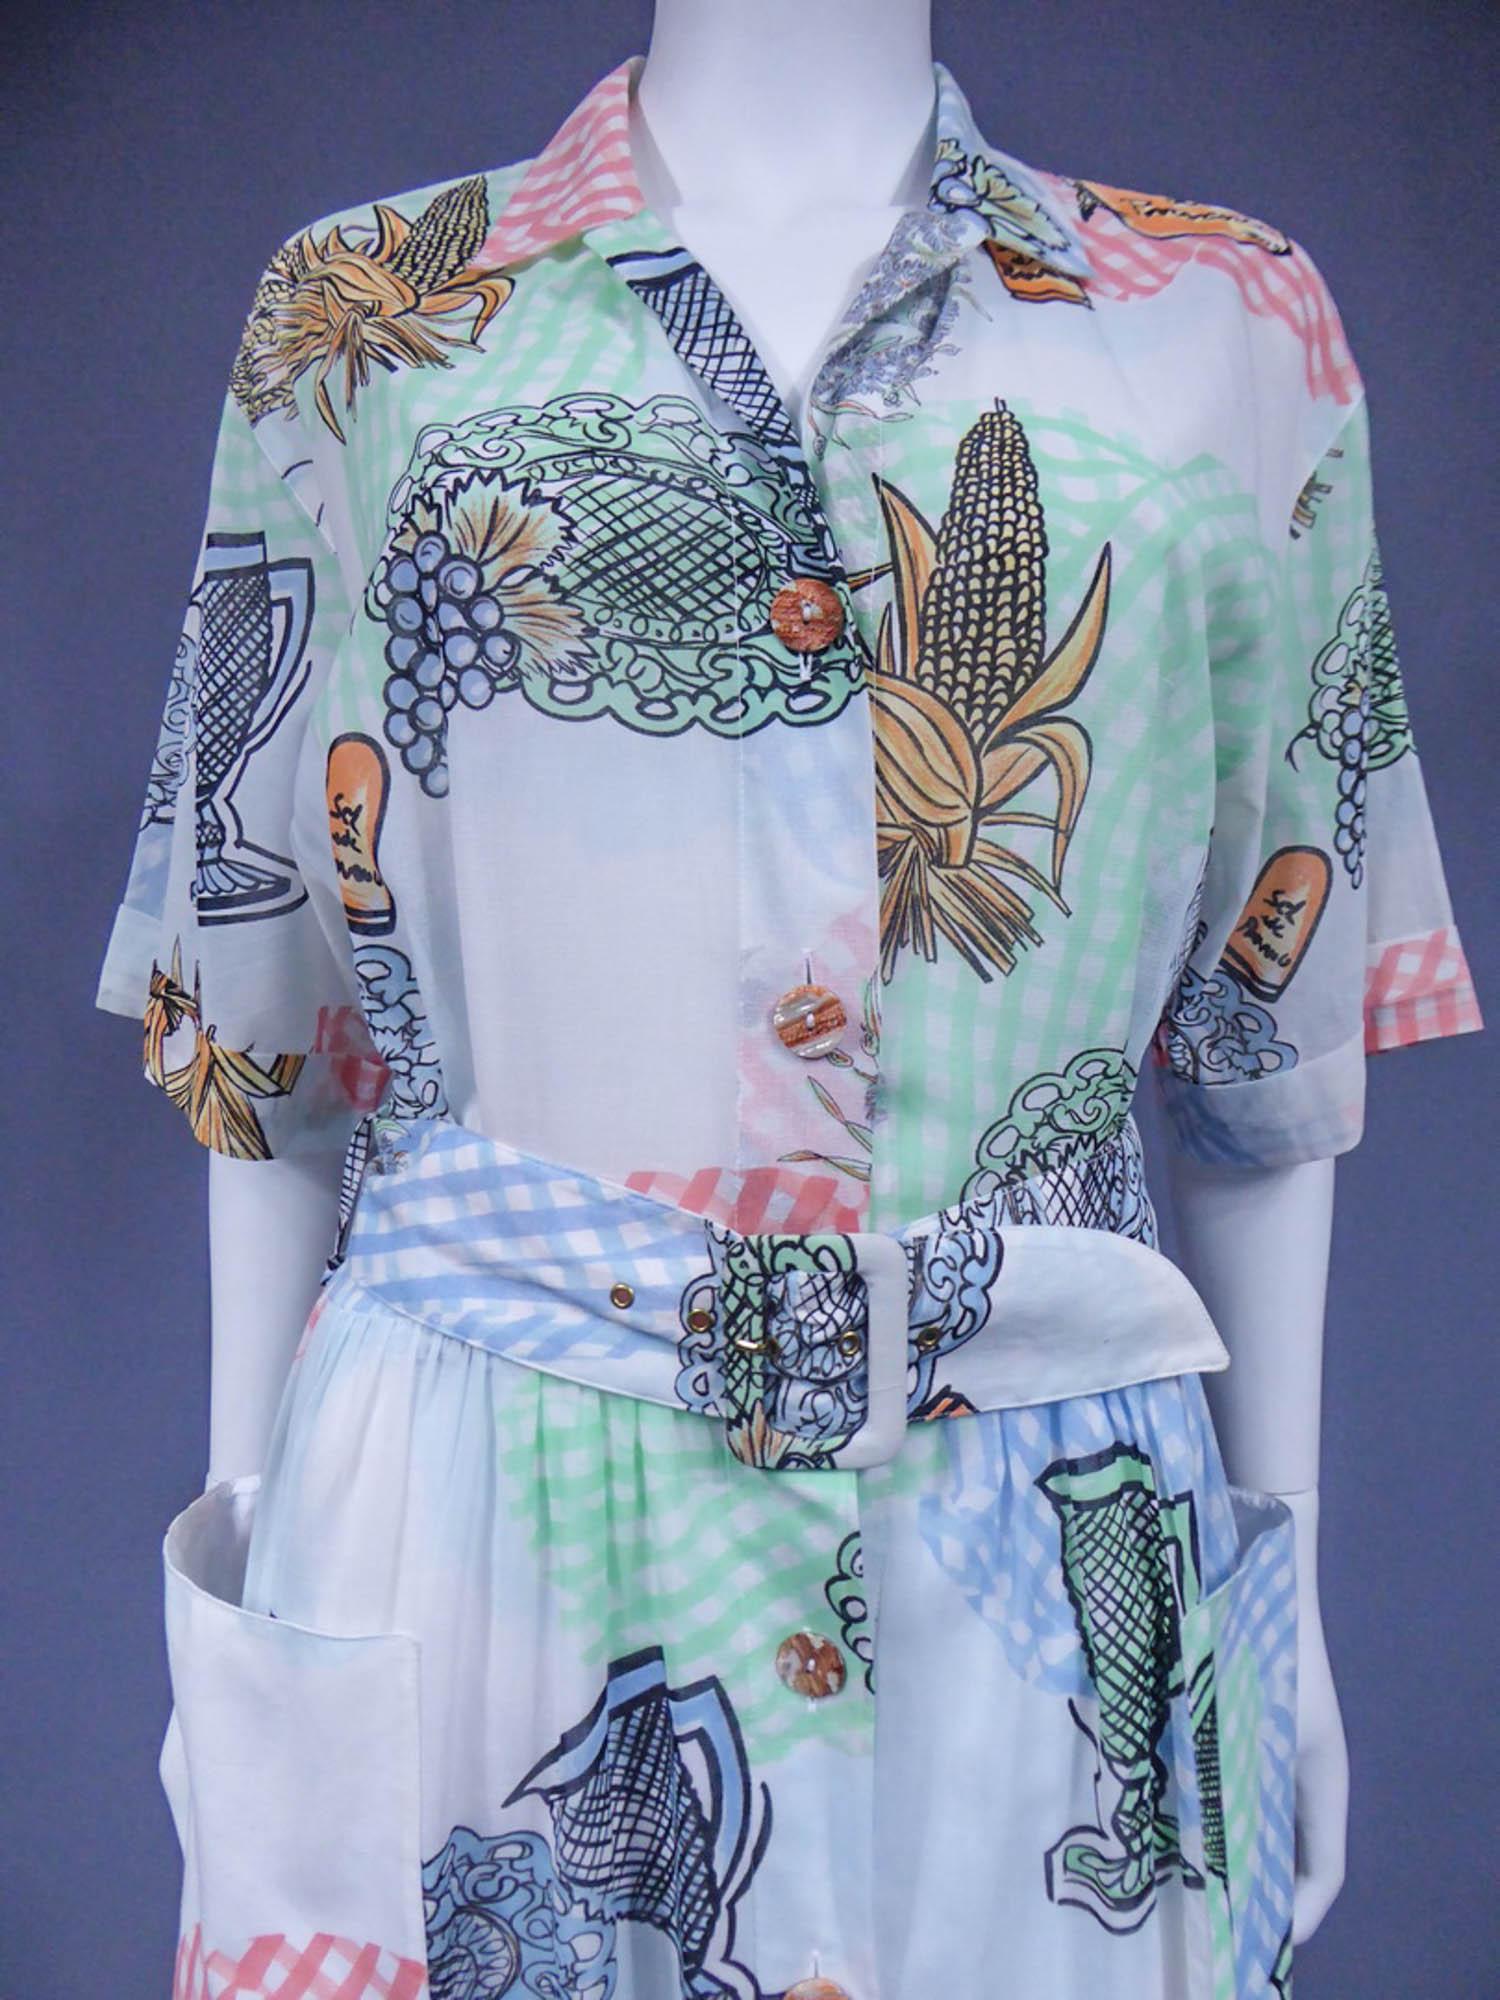 Um 1970
Frankreich

Kleid aus bedrucktem Polyamid im provençalischen Stil von Louis Féraud aus den 1970er Jahren. Kurzärmeliges Modell, passende Gürtelschnalle und weites Rockfutter. Öffnung auf der Vorderseite mit passenden Harzknöpfen.